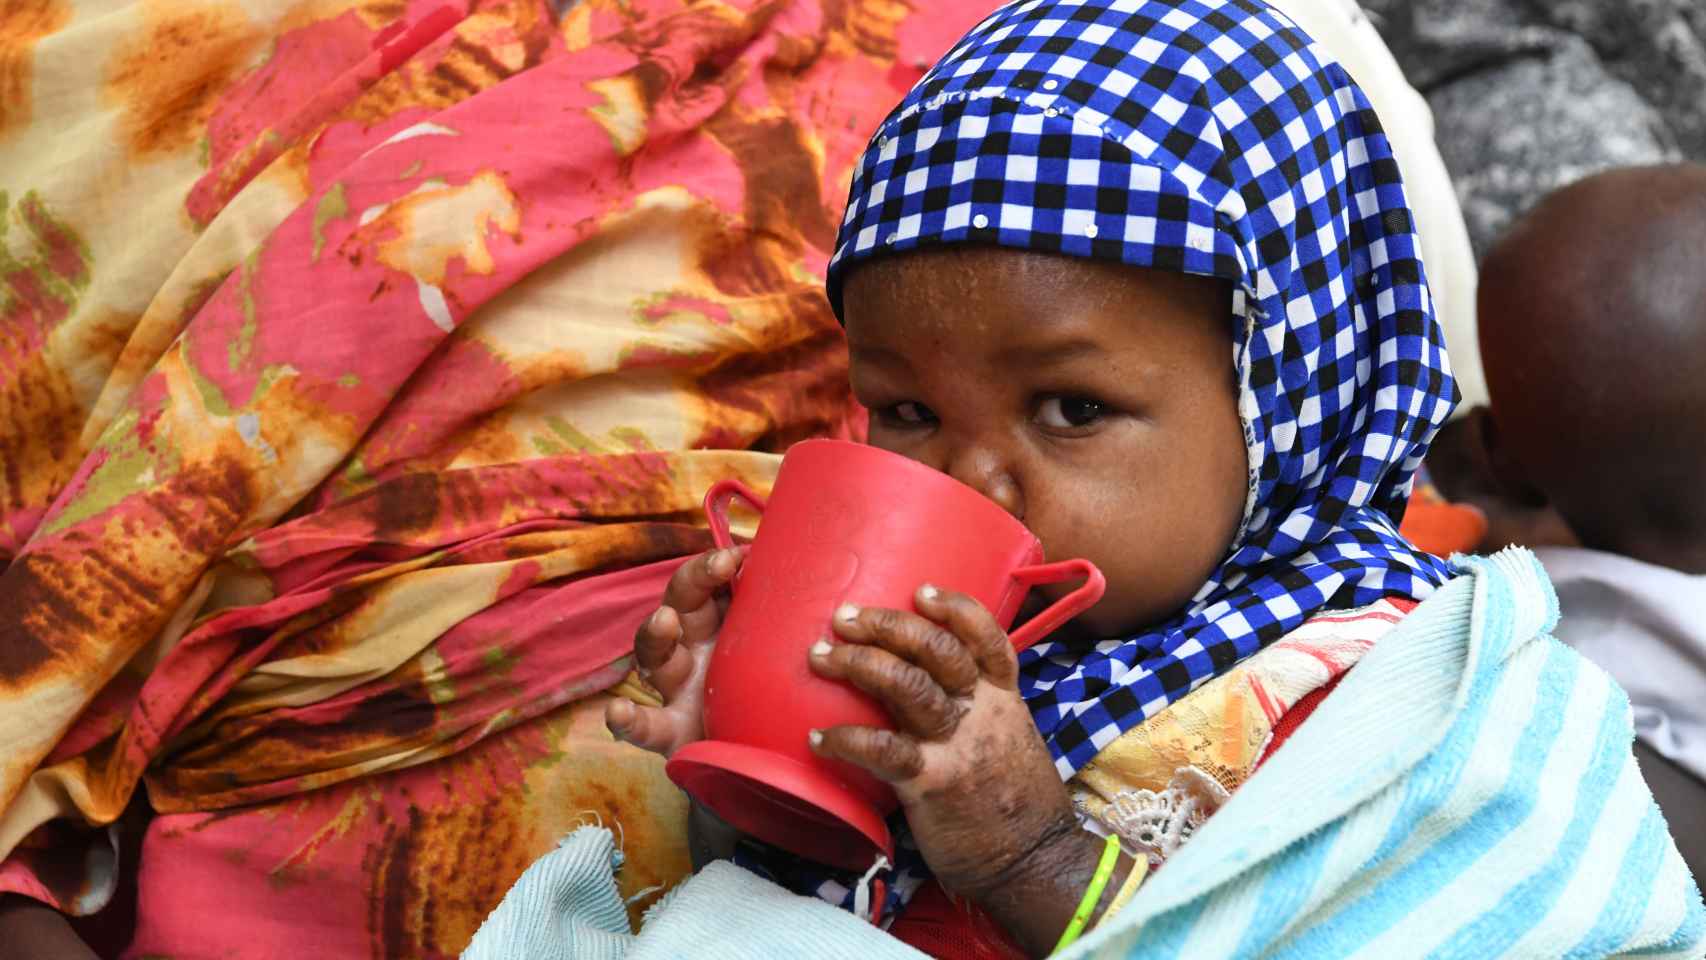 UNICEF alerta: la hambruna mundial podría acabar 49 millones de personas